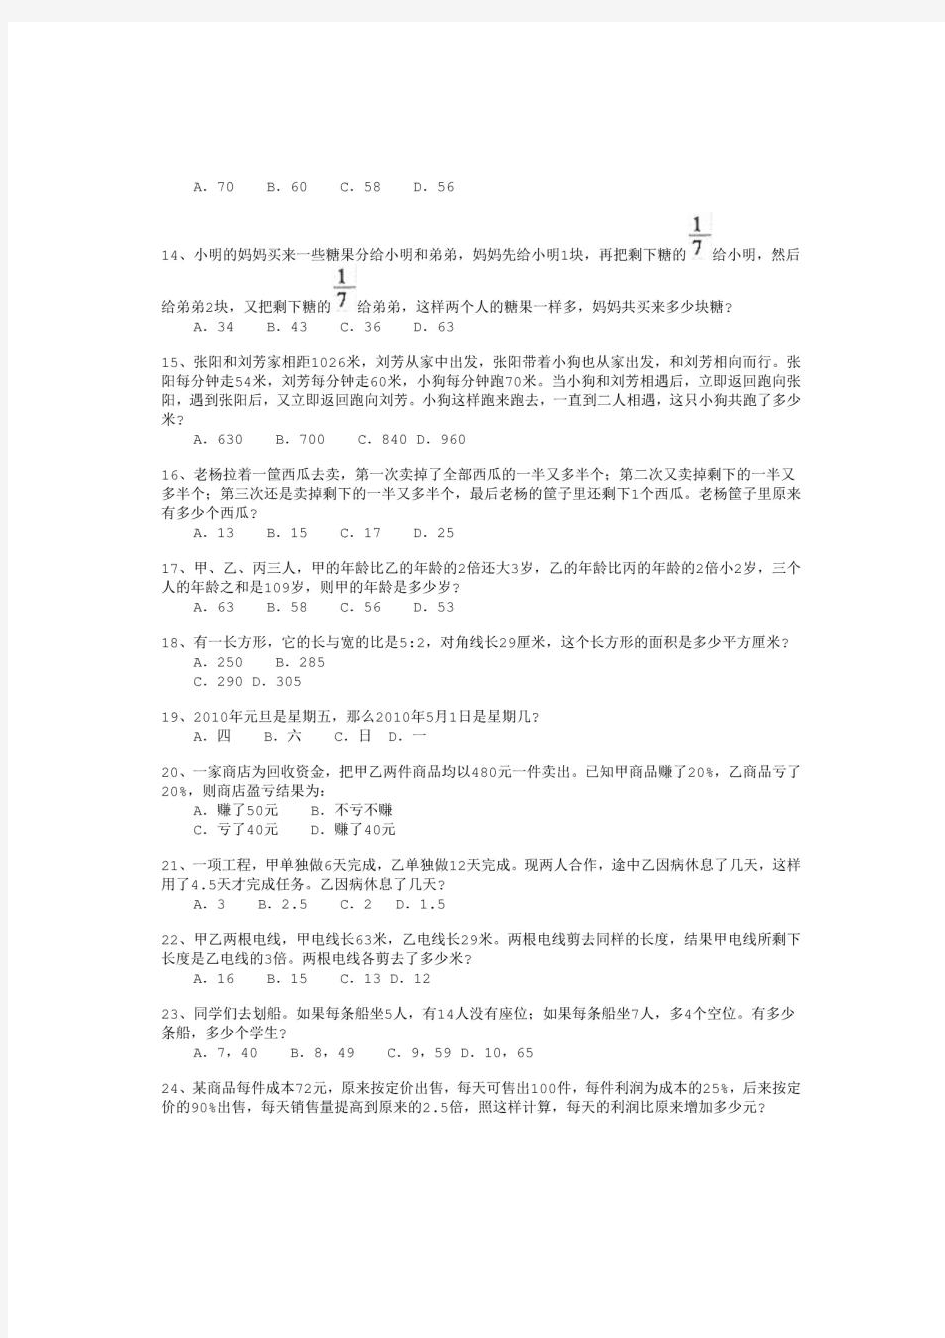 2012年河北省省直事业单位公开招聘工作人员考试《职业能力倾向测试》真题及详解-b